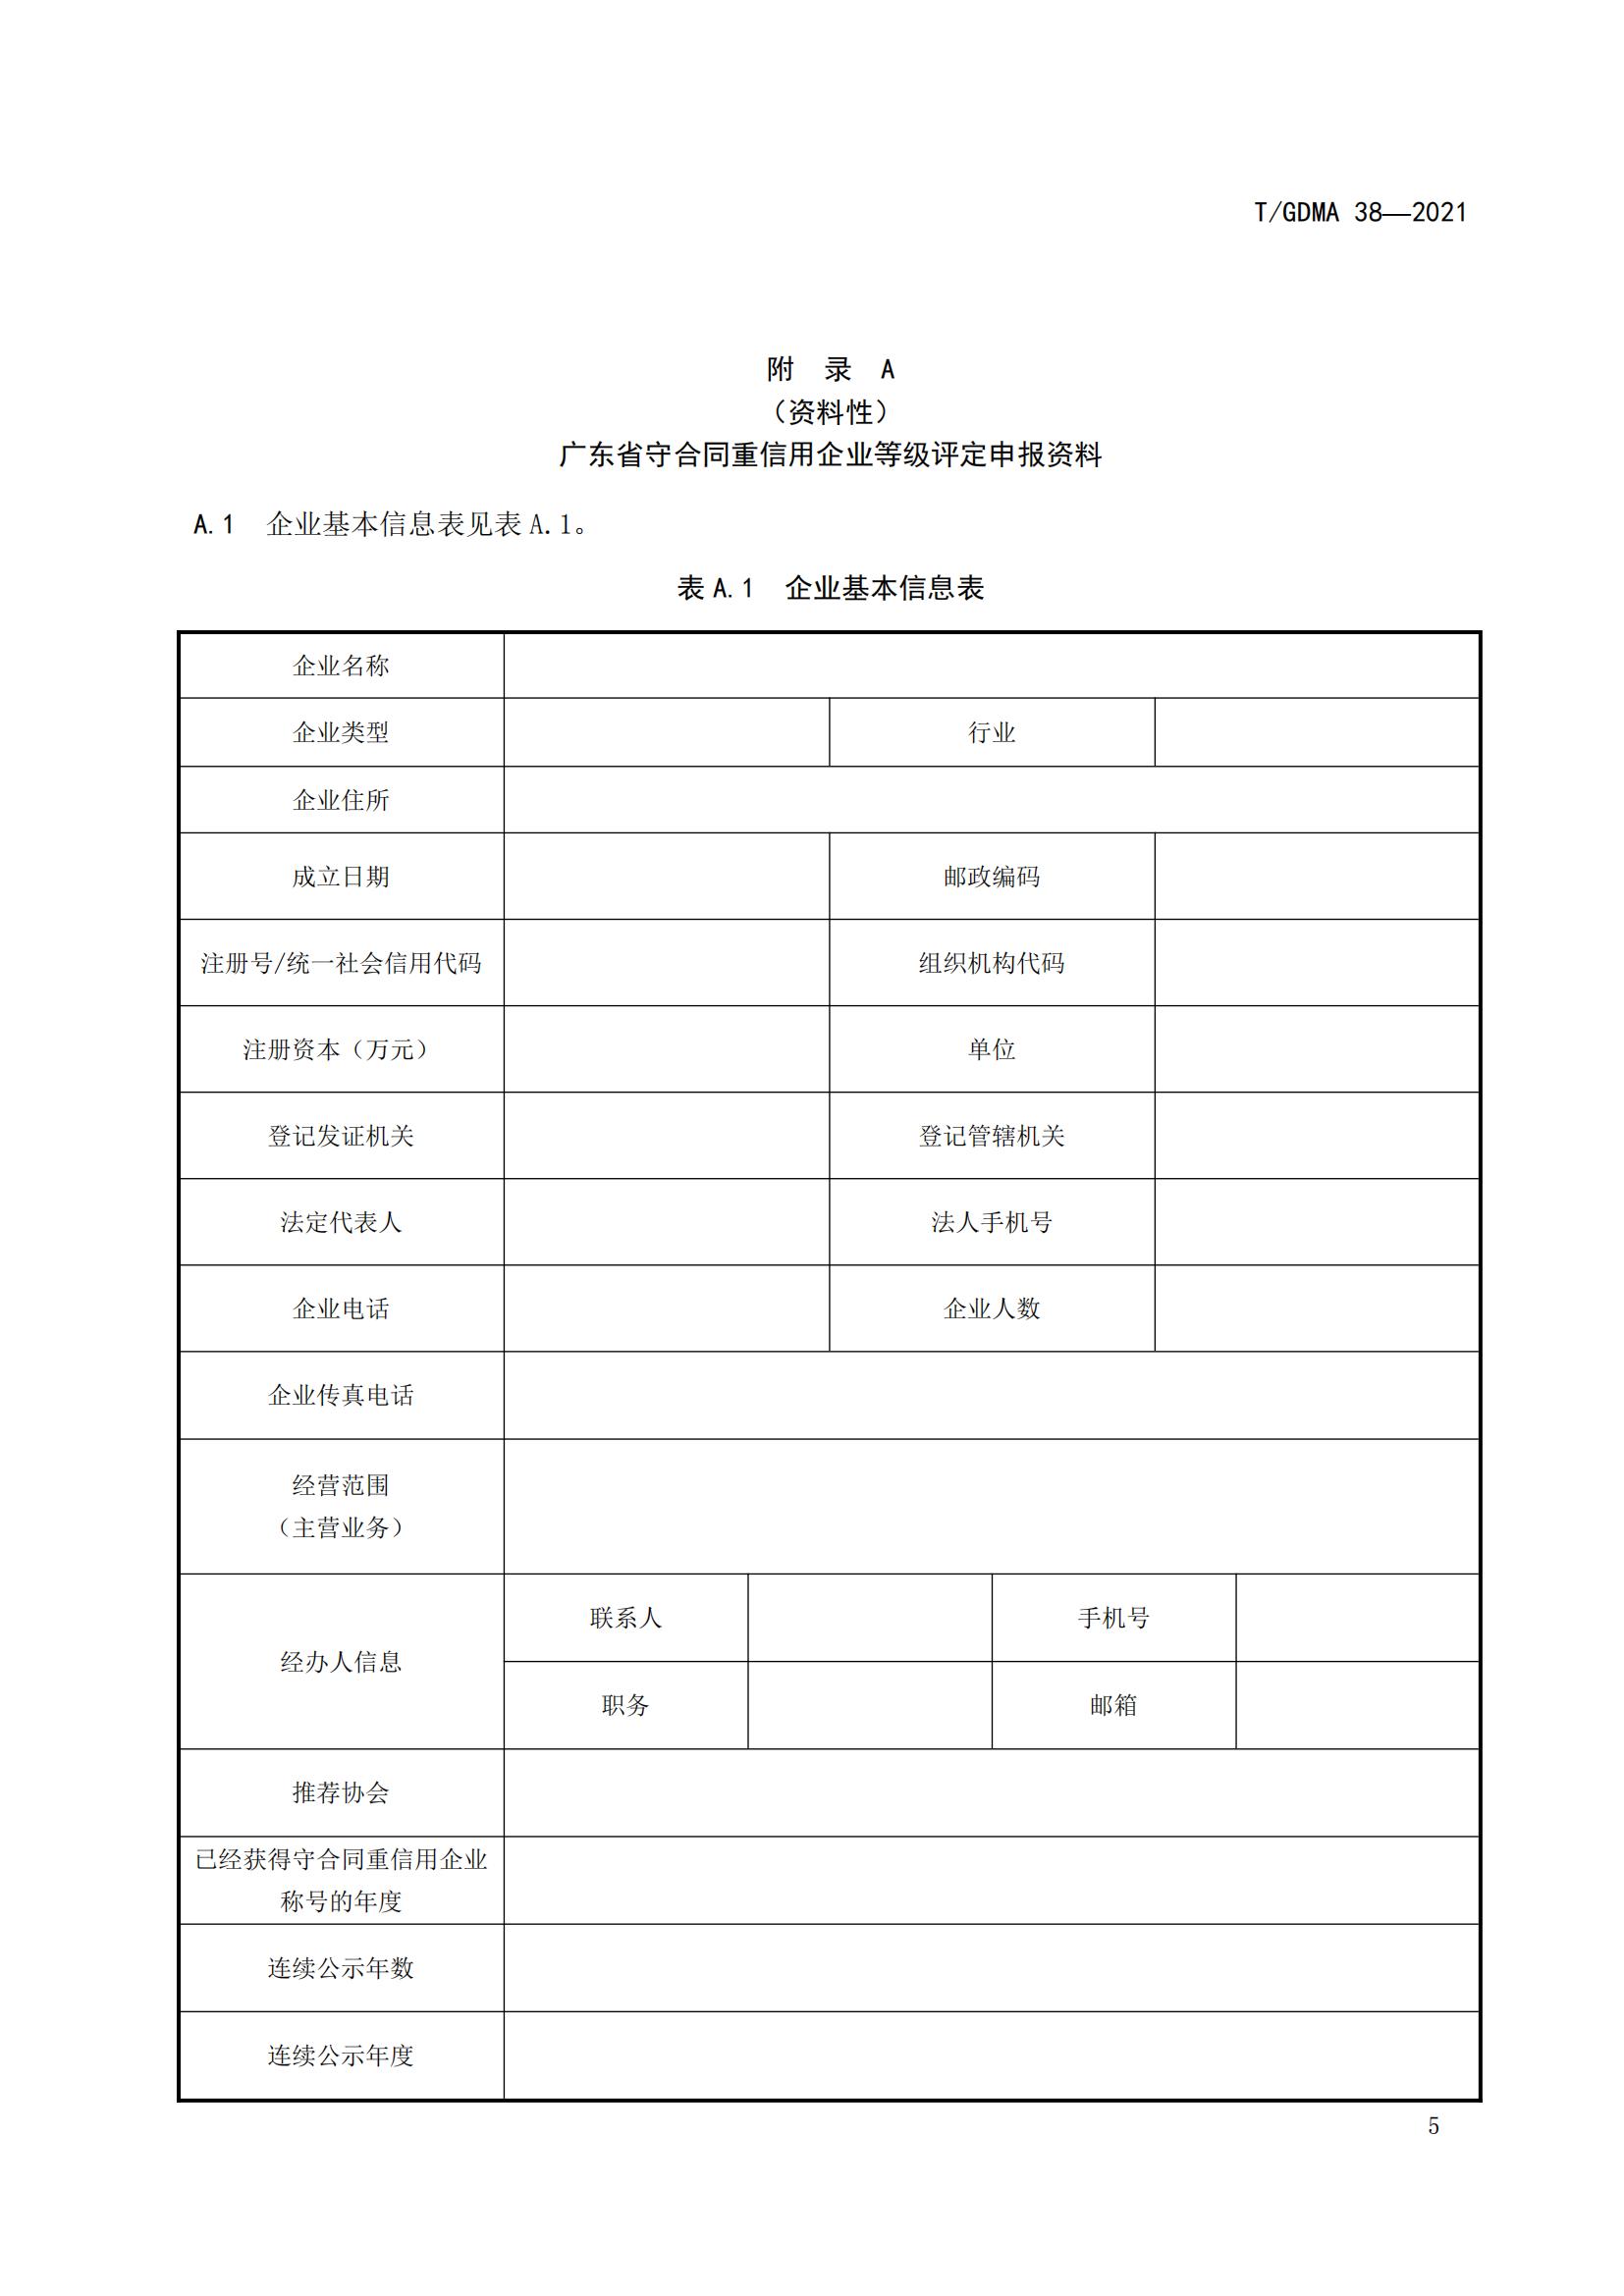 TGDMA 38 广东省守合同重信用企业等级评定规范-发布稿_08.jpg